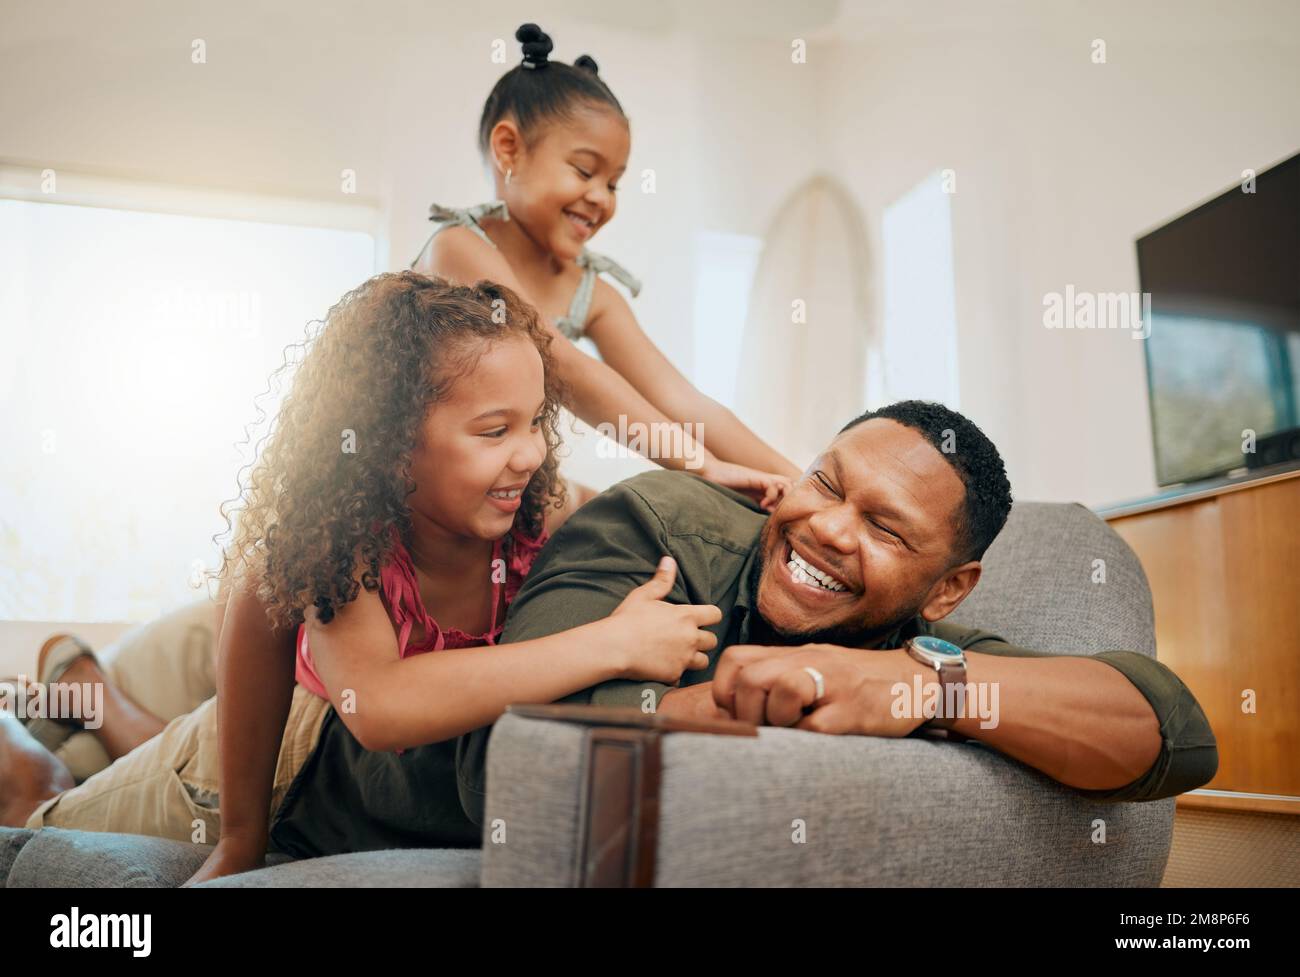 Une famille de trois personnes se détendant dans le salon et jouant ensemble. Aimant parent unique noir liant avec ses filles pendant Banque D'Images